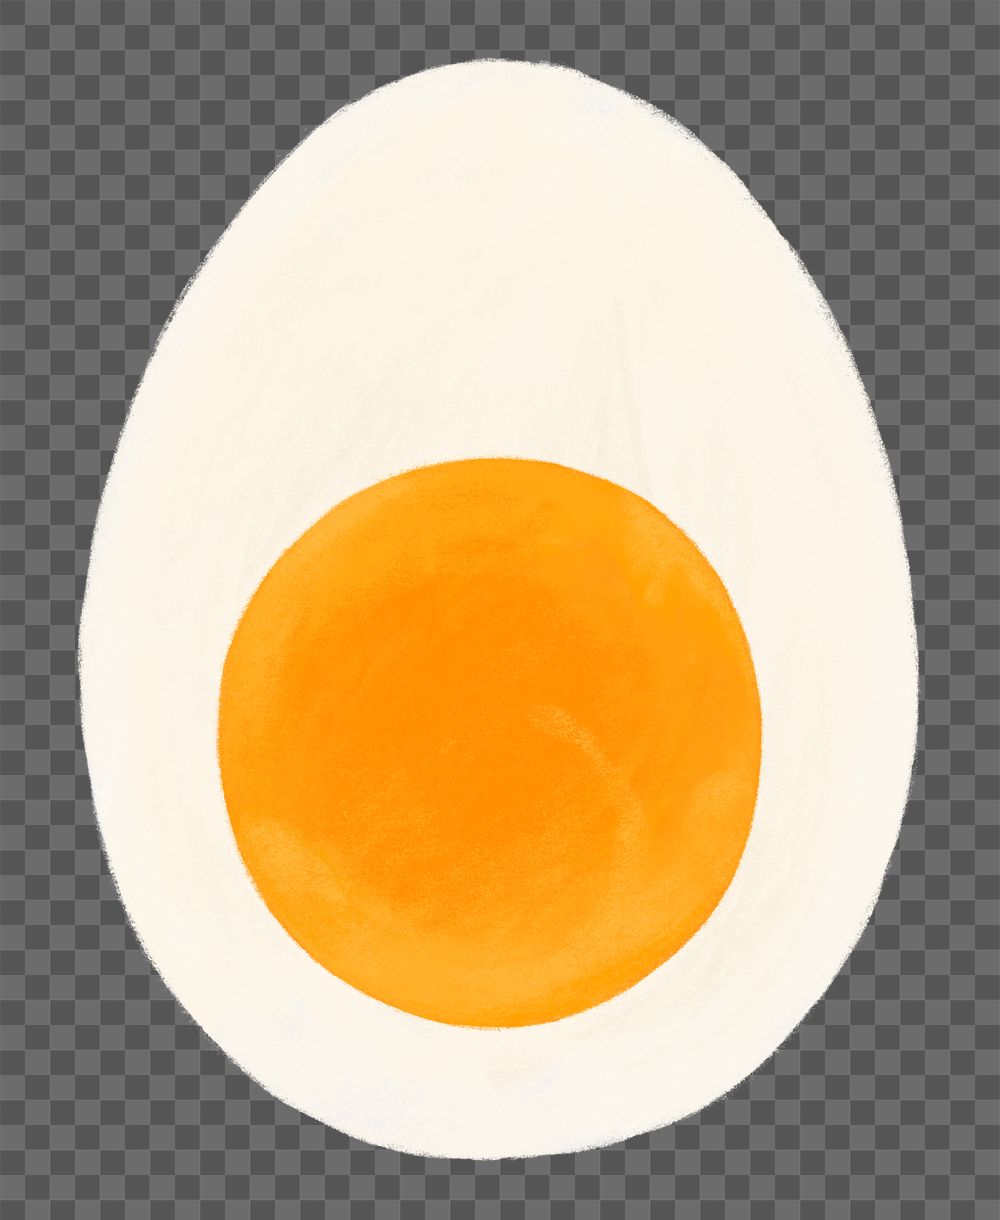 Boiled egg png food sticker, transparent background